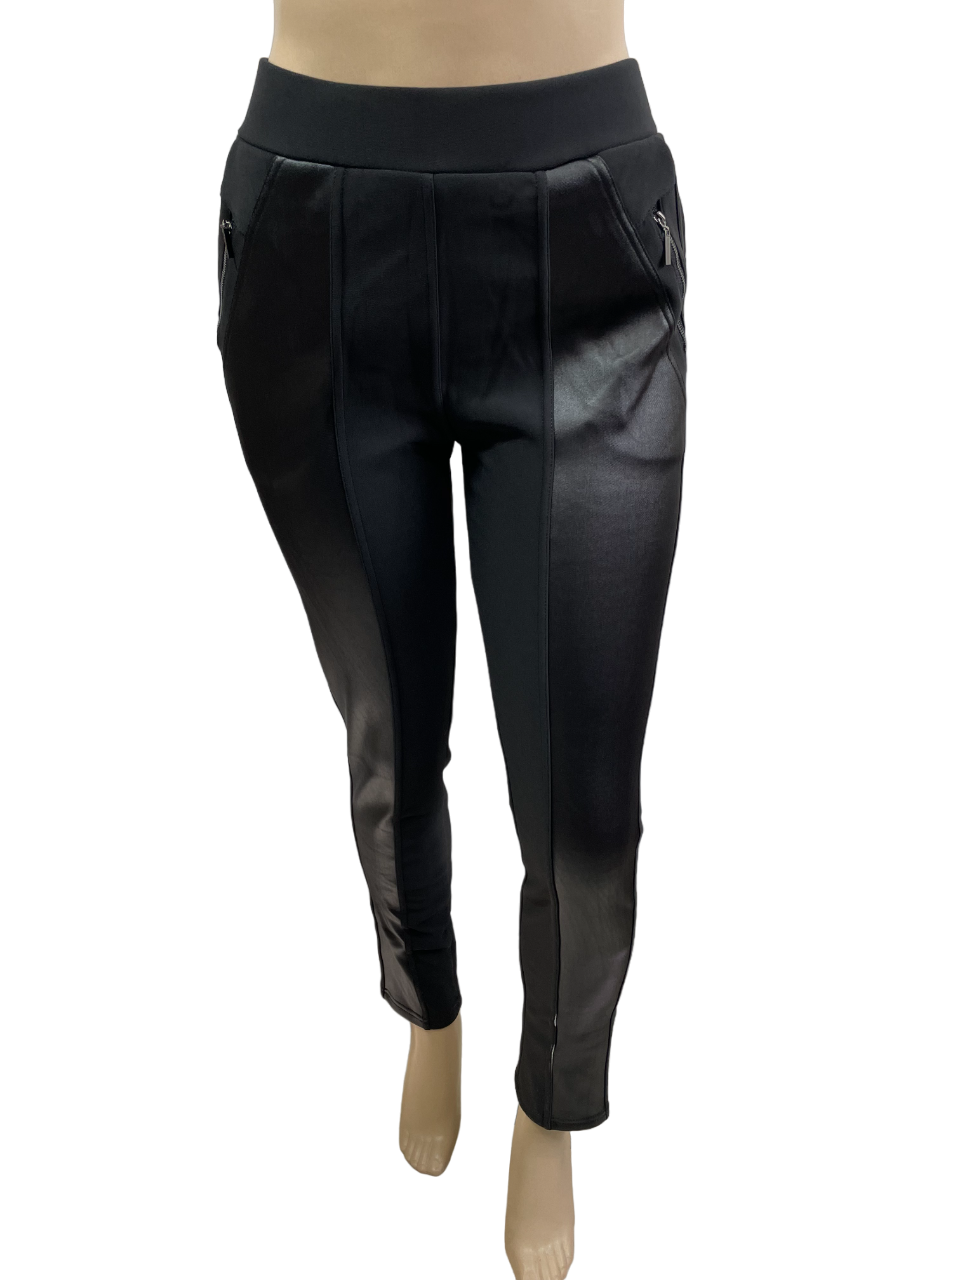 Pantalon legging doublé à insertions de simili cuir